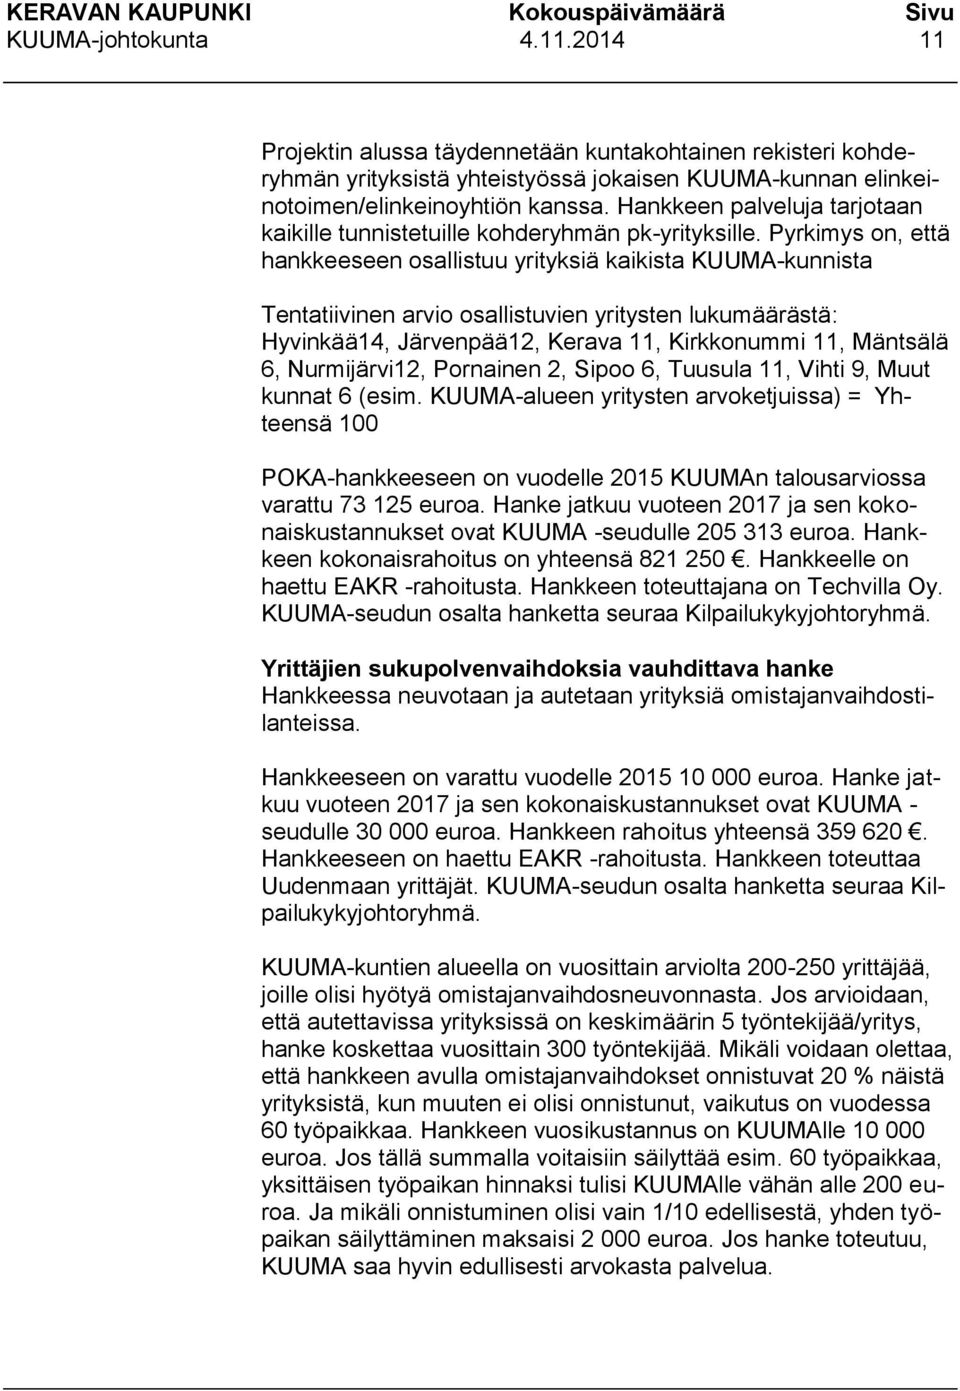 Pyrkimys on, että hankkeeseen osallistuu yrityksiä kaikista KUUMA-kunnista Tentatiivinen arvio osallistuvien yritysten lukumäärästä: Hyvinkää14, Järvenpää12, Kerava 11, Kirkkonummi 11, Mäntsälä 6,